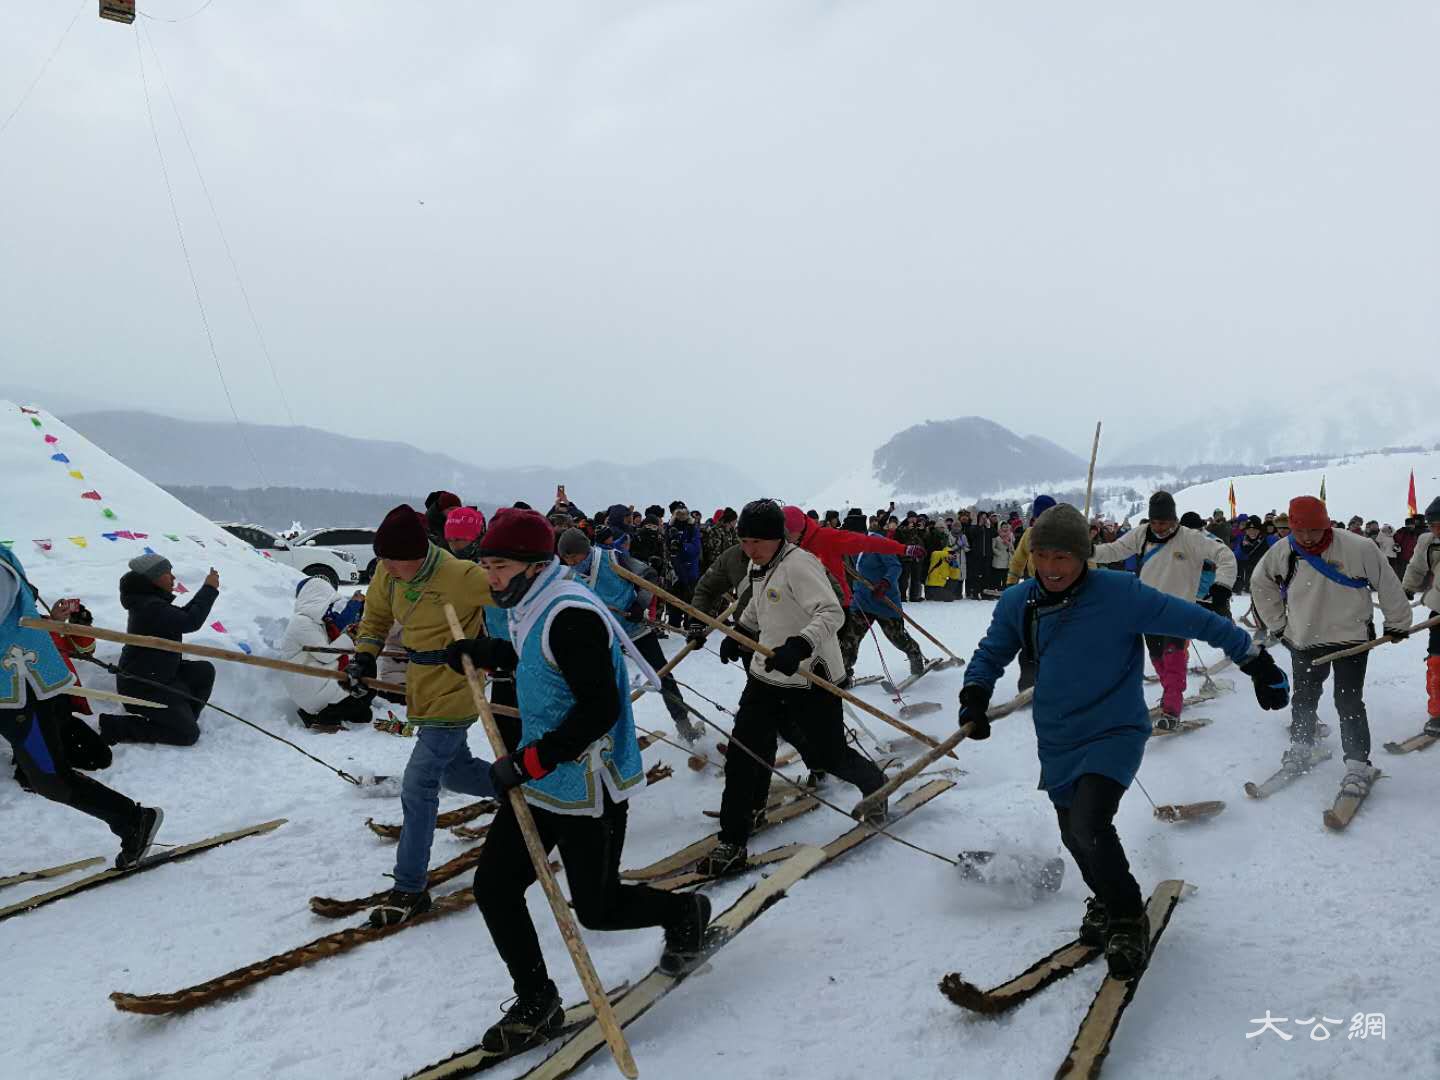 喀納斯冰雪風情旅遊節暨潑雪狂歡節現場舉辦滑雪比賽 應江洪 攝